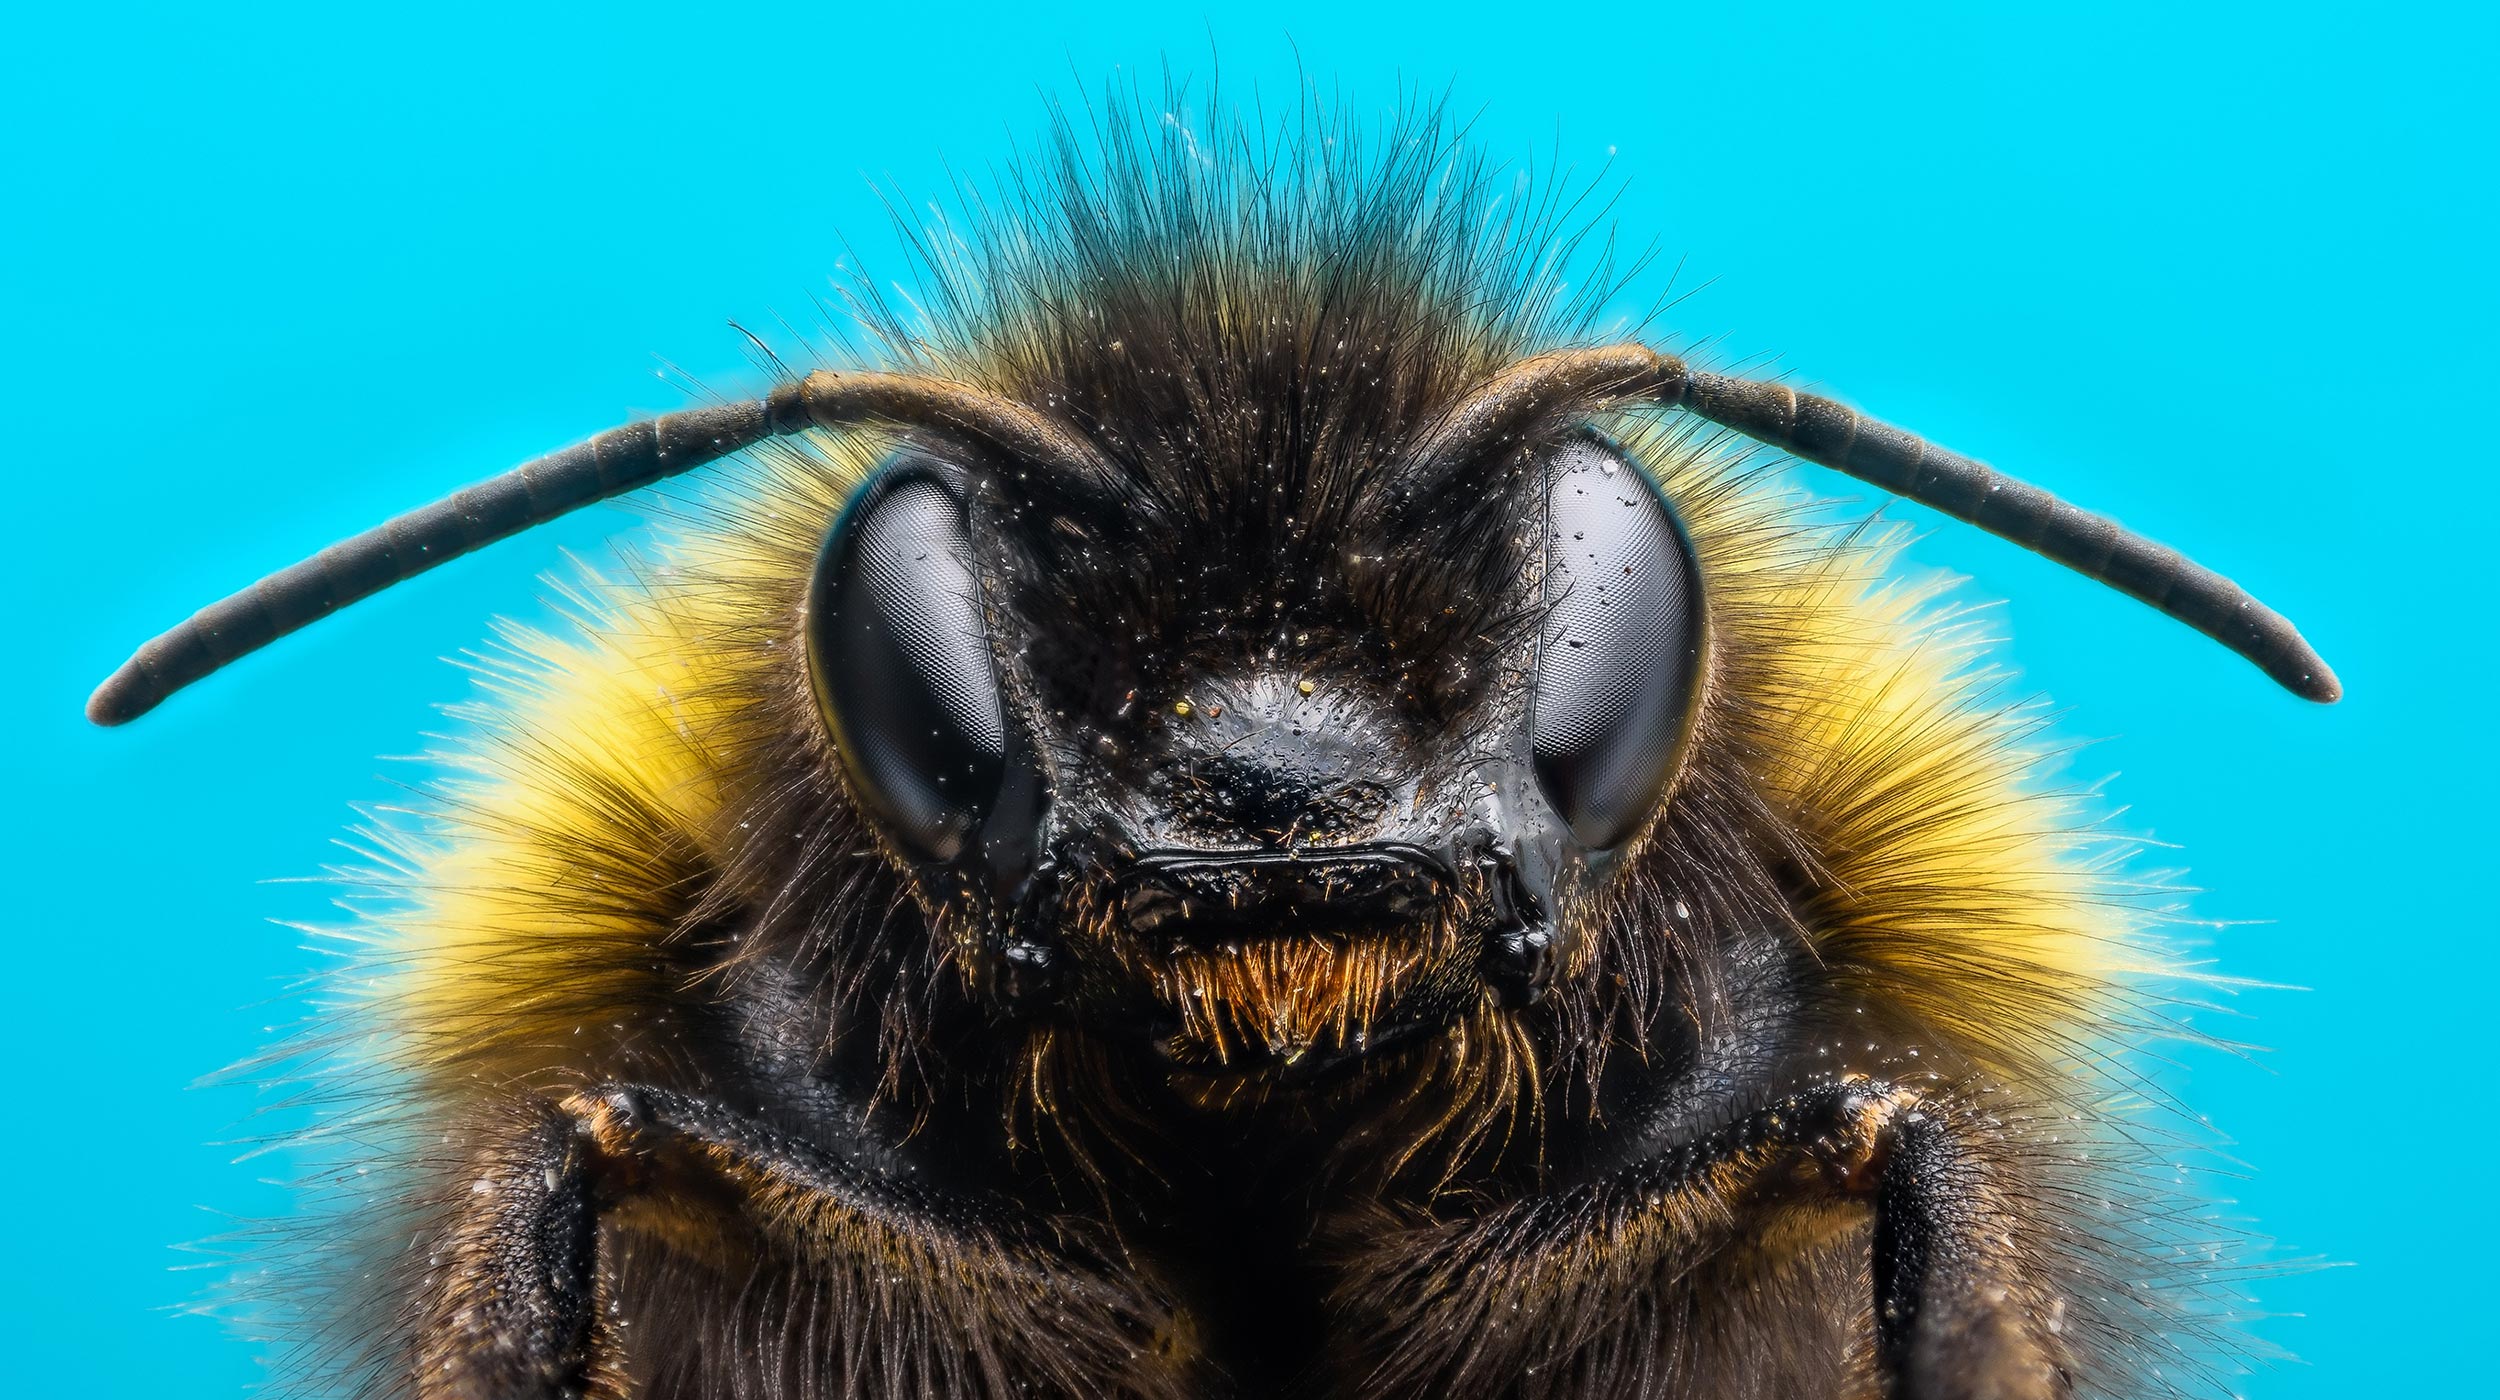 Шмели учатся решать головоломки, наблюдая за другими пчелами